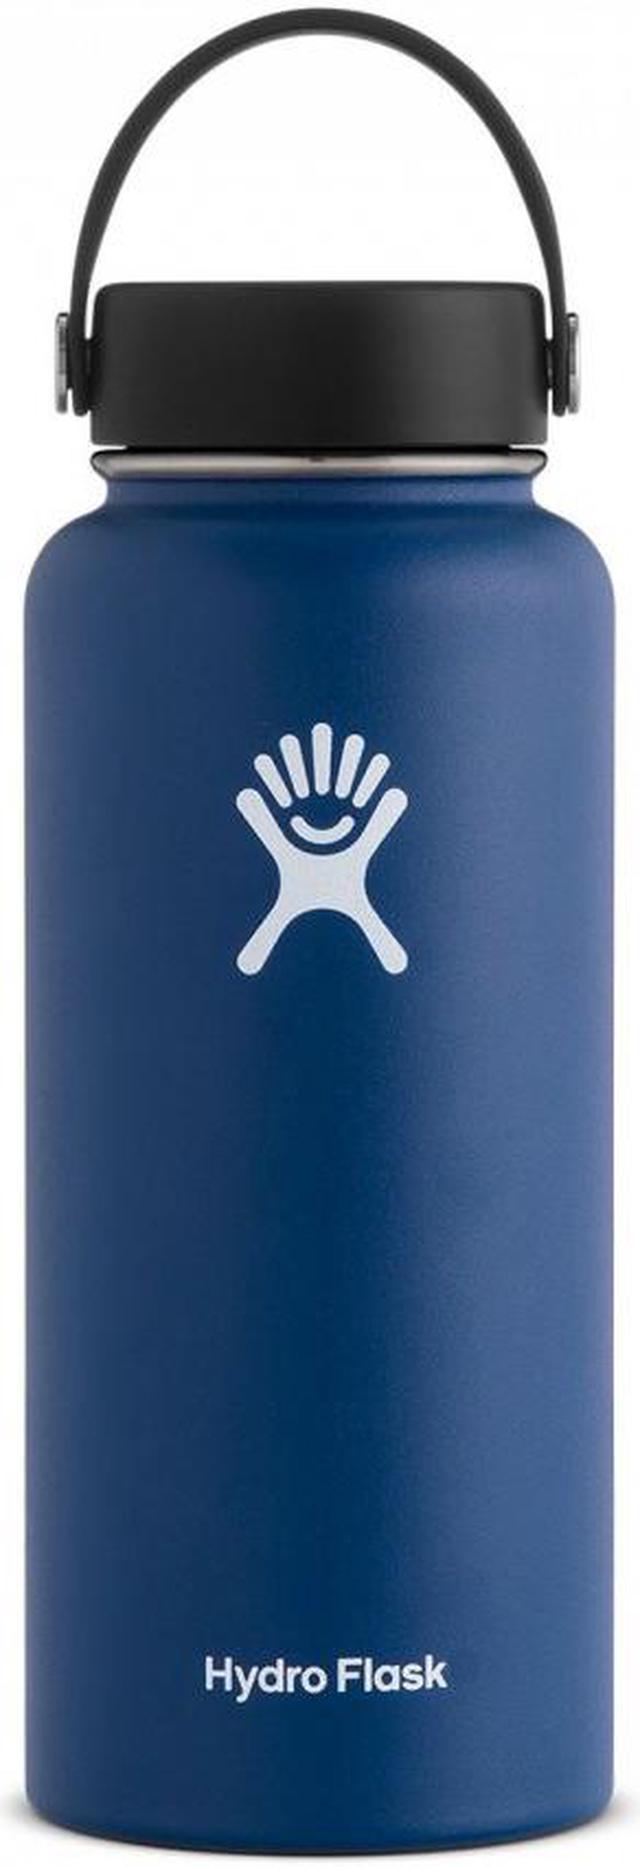 Hydro Flask Blue Water Bottles